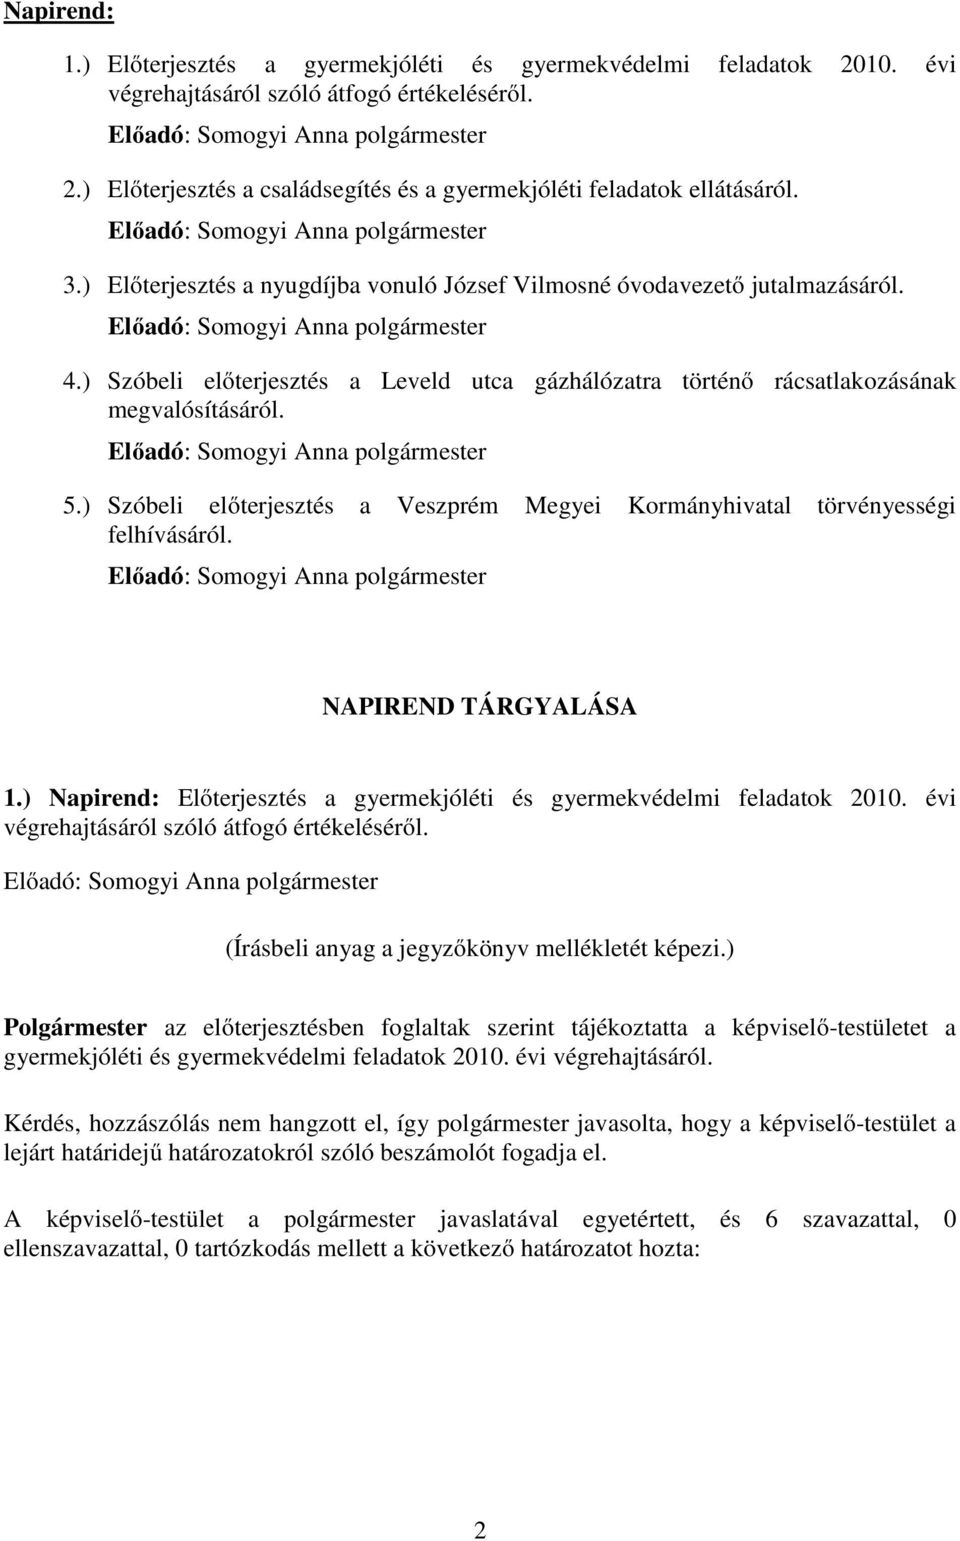 ) Szóbeli előterjesztés a Veszprém Megyei Kormányhivatal törvényességi felhívásáról. NAPIREND TÁRGYALÁSA 1.) Napirend: Előterjesztés a gyermekjóléti és gyermekvédelmi feladatok 2010.